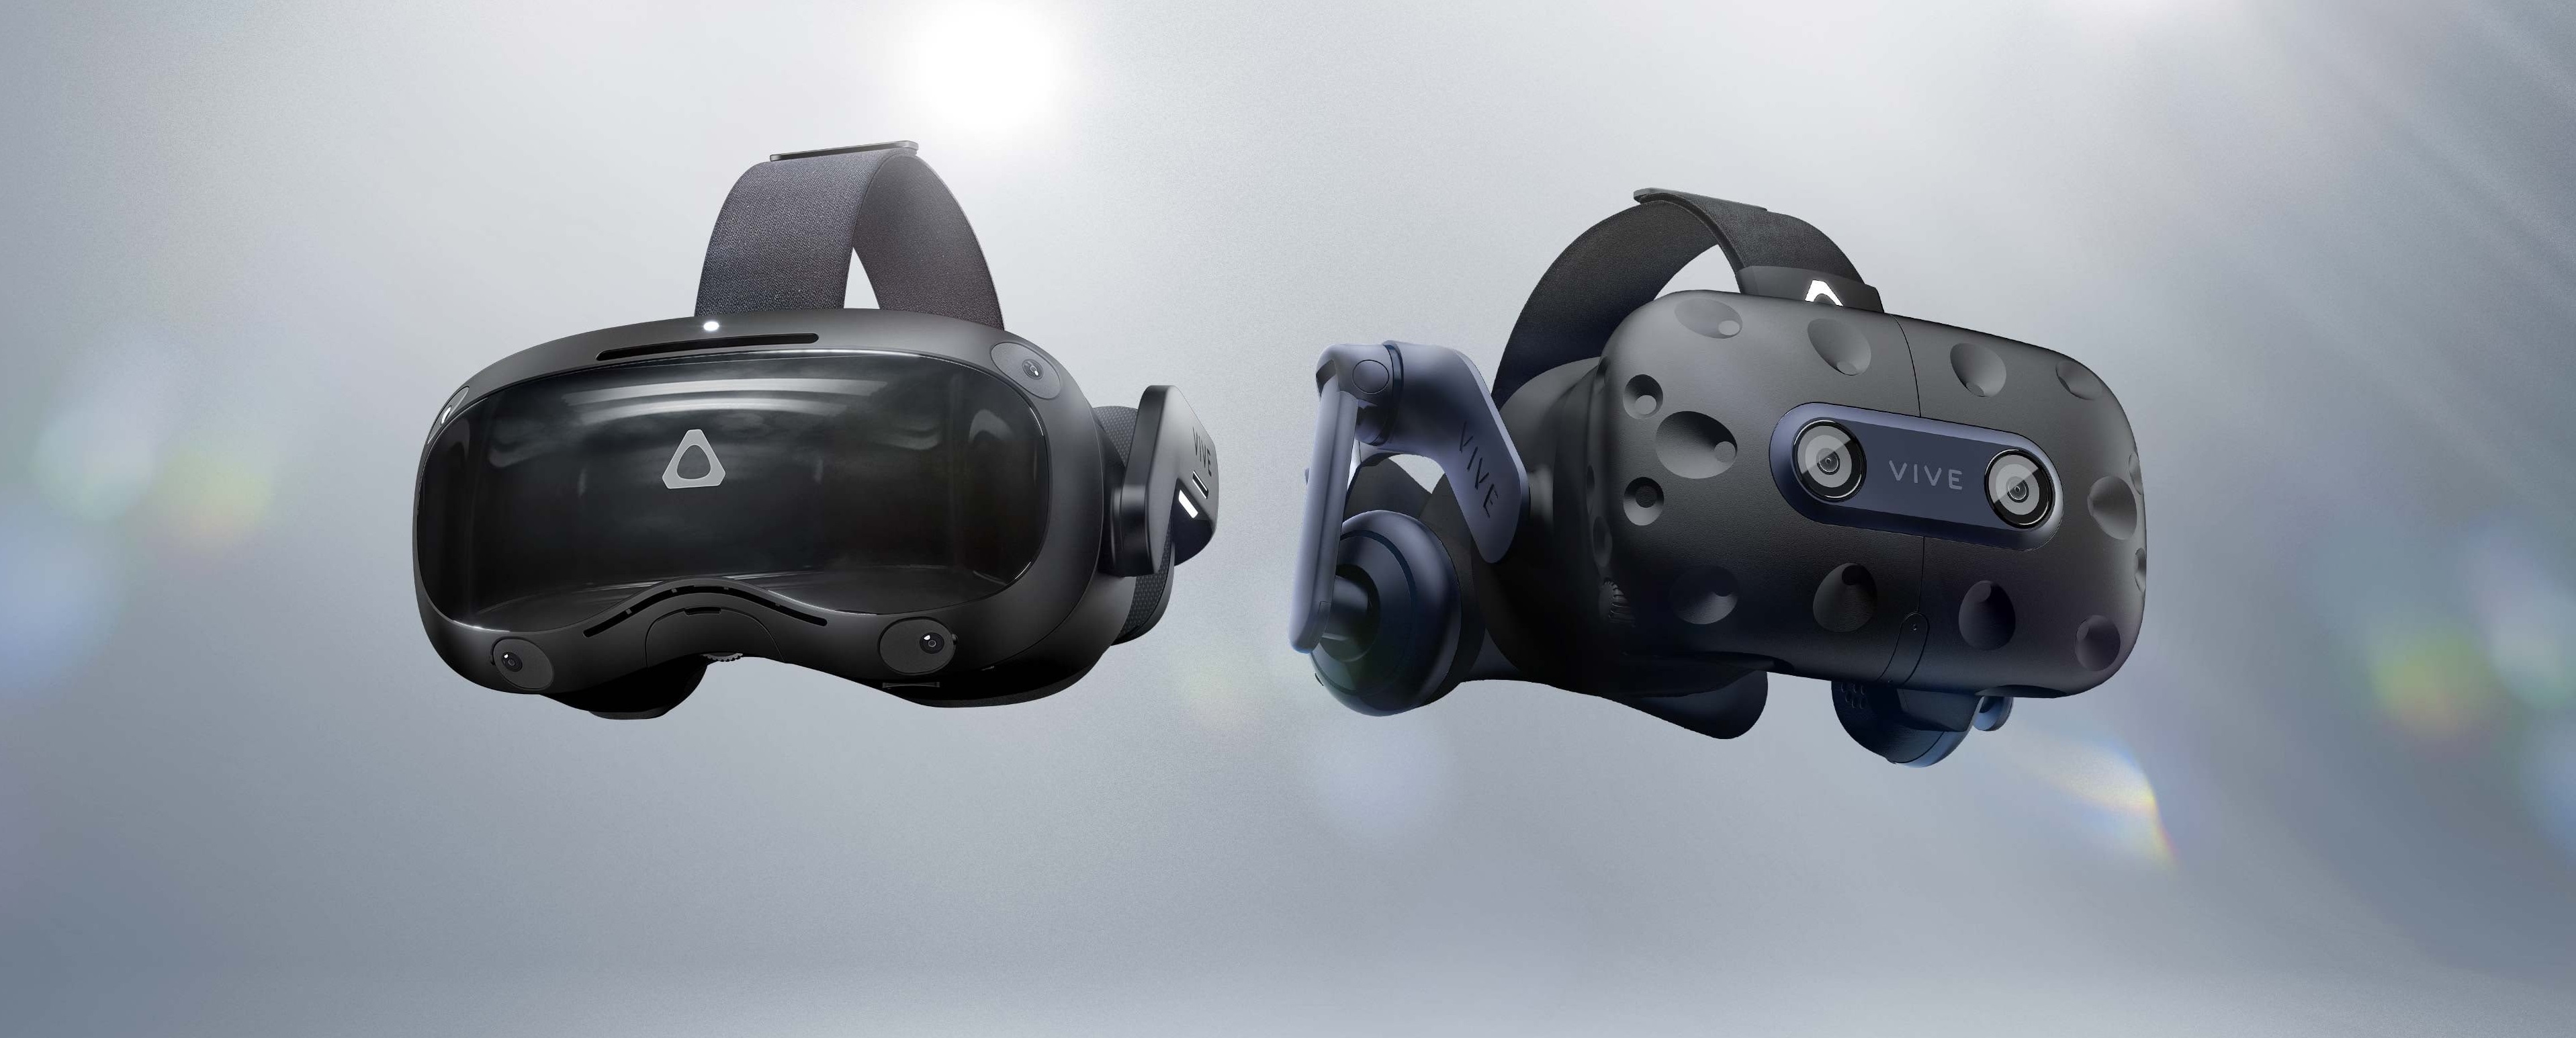 Подключаем vr к компьютеру. Беспроводной блок HTC К компьютеру и VR очкам. HTC Vive Flow VR подключение к компьютеру. Как пользоваться VR очками. Как подключить VR очки к телевизору HTC.